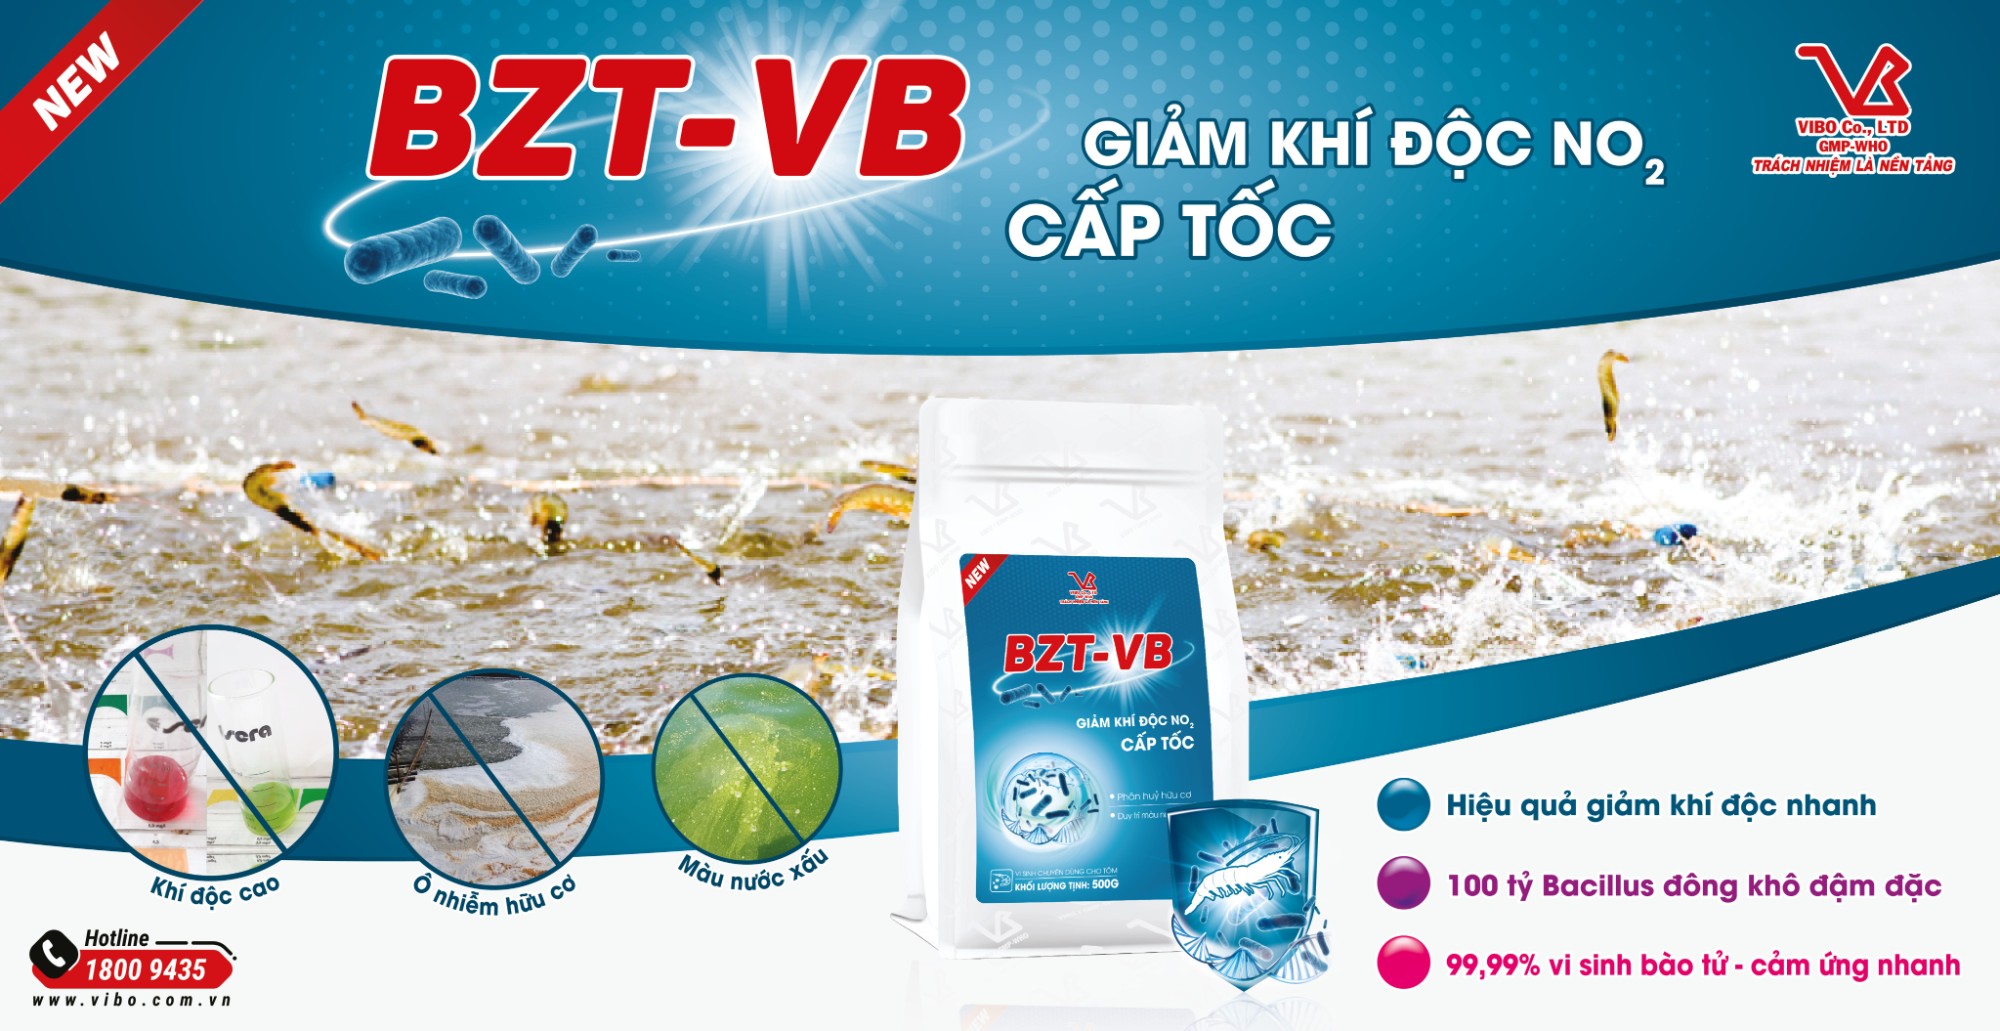 BZT-VB New